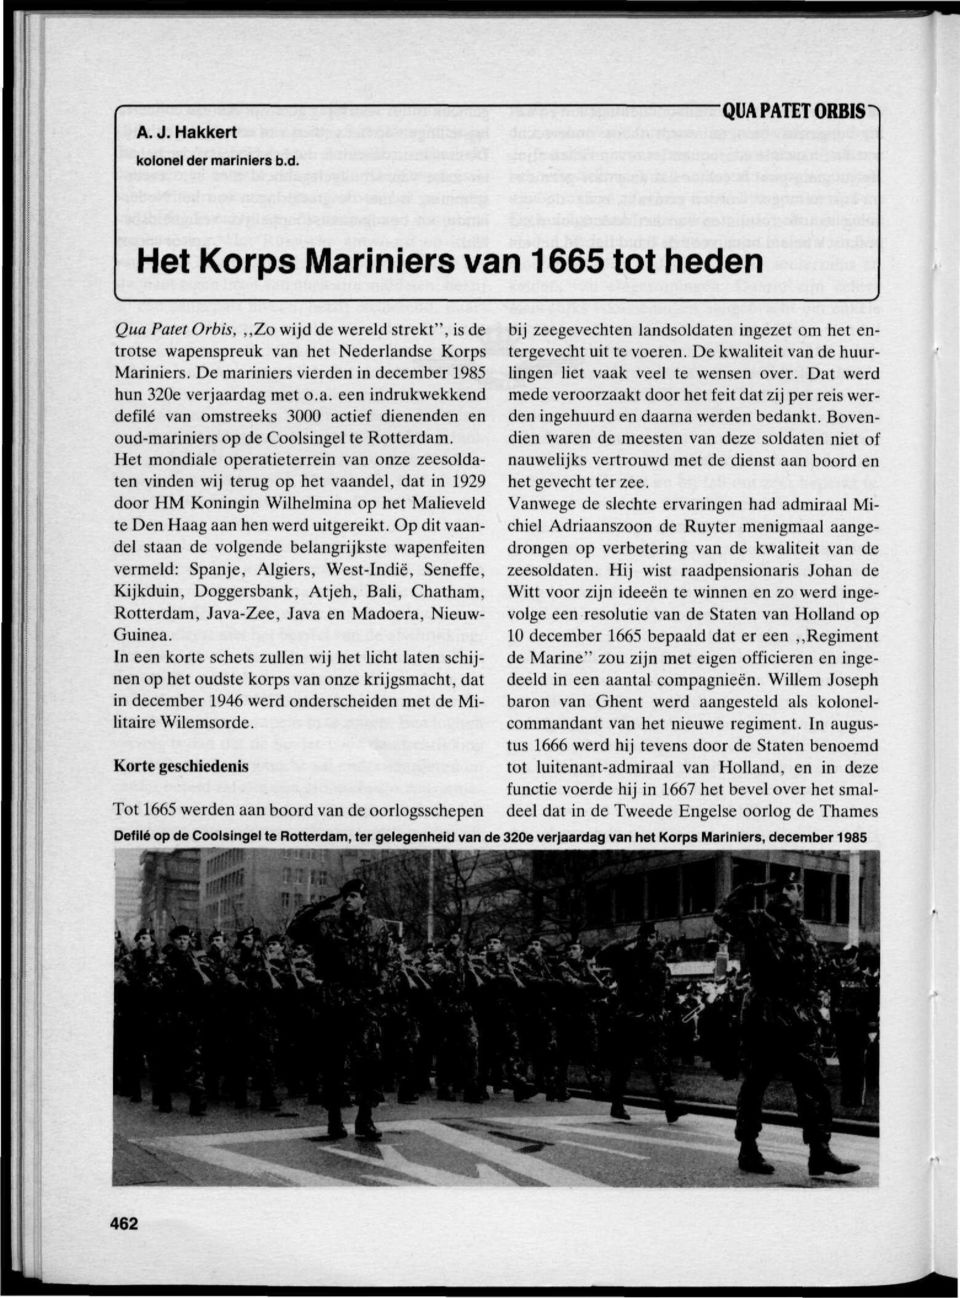 Het mondiale operatieterrein van onze zeesoldaten vinden wij terug op het vaandel, dat in 1929 door HM Koningin Wilhelmina op het Malieveld te Den Haag aan hen werd uitgereikt.